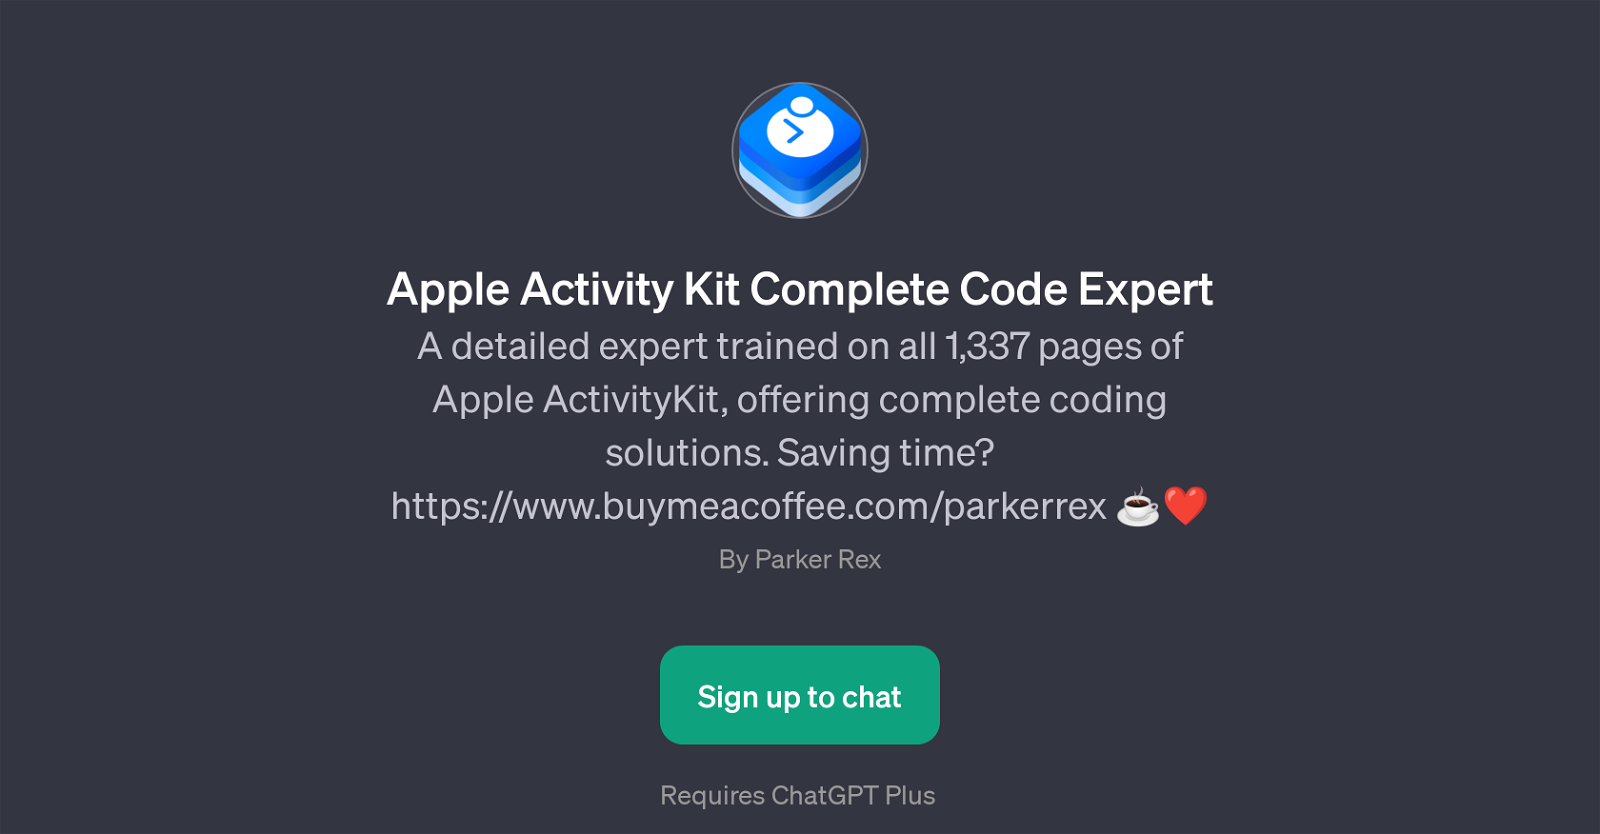 Apple Activity Kit Complete Code Expert website